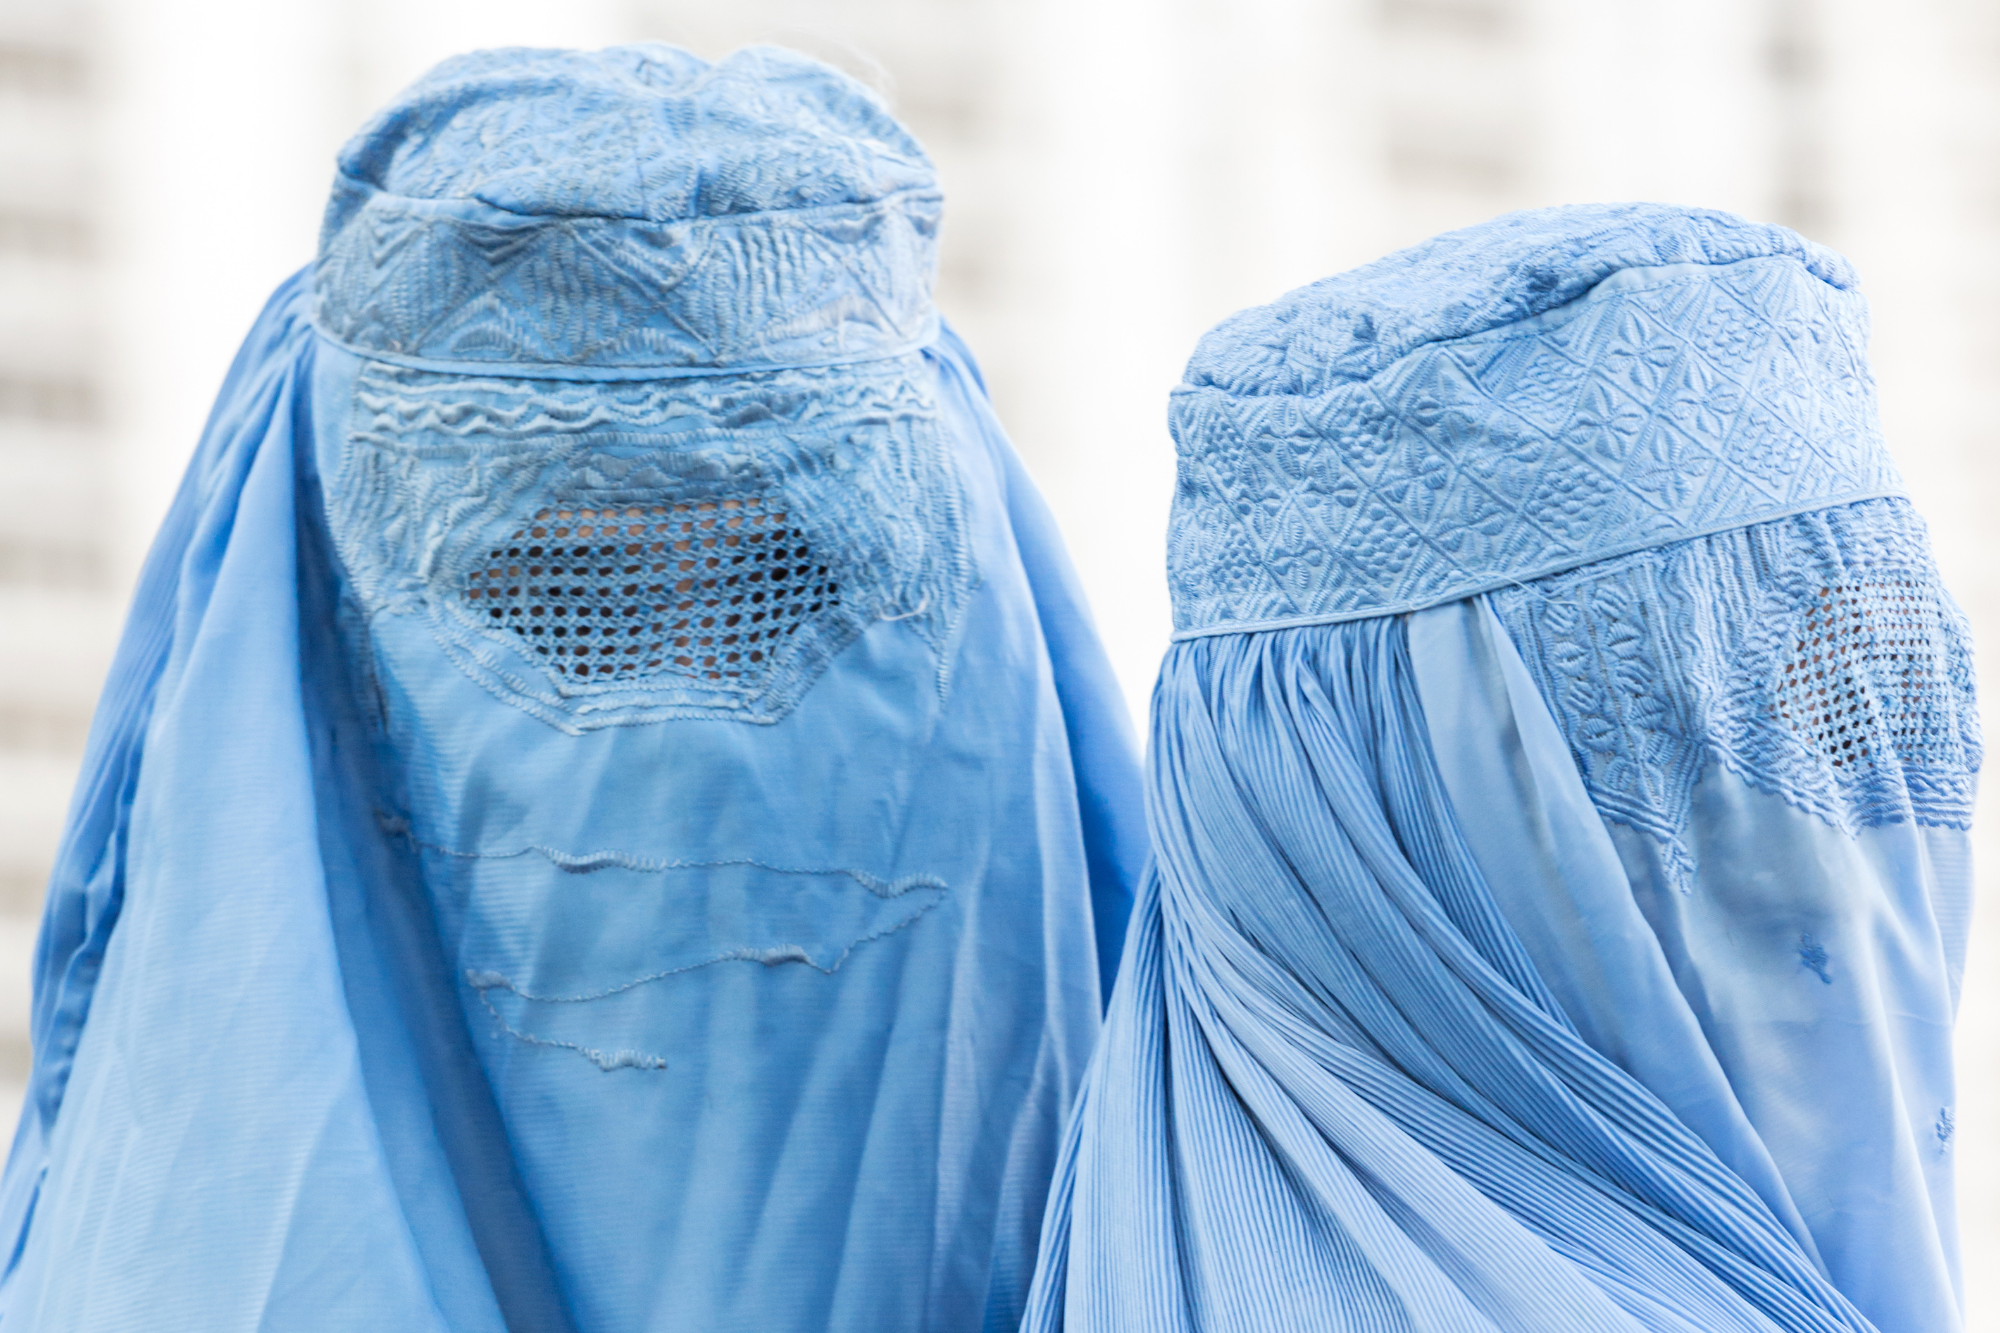 No alle donne: perché l’ONU ha accettato le condizioni dei talebani